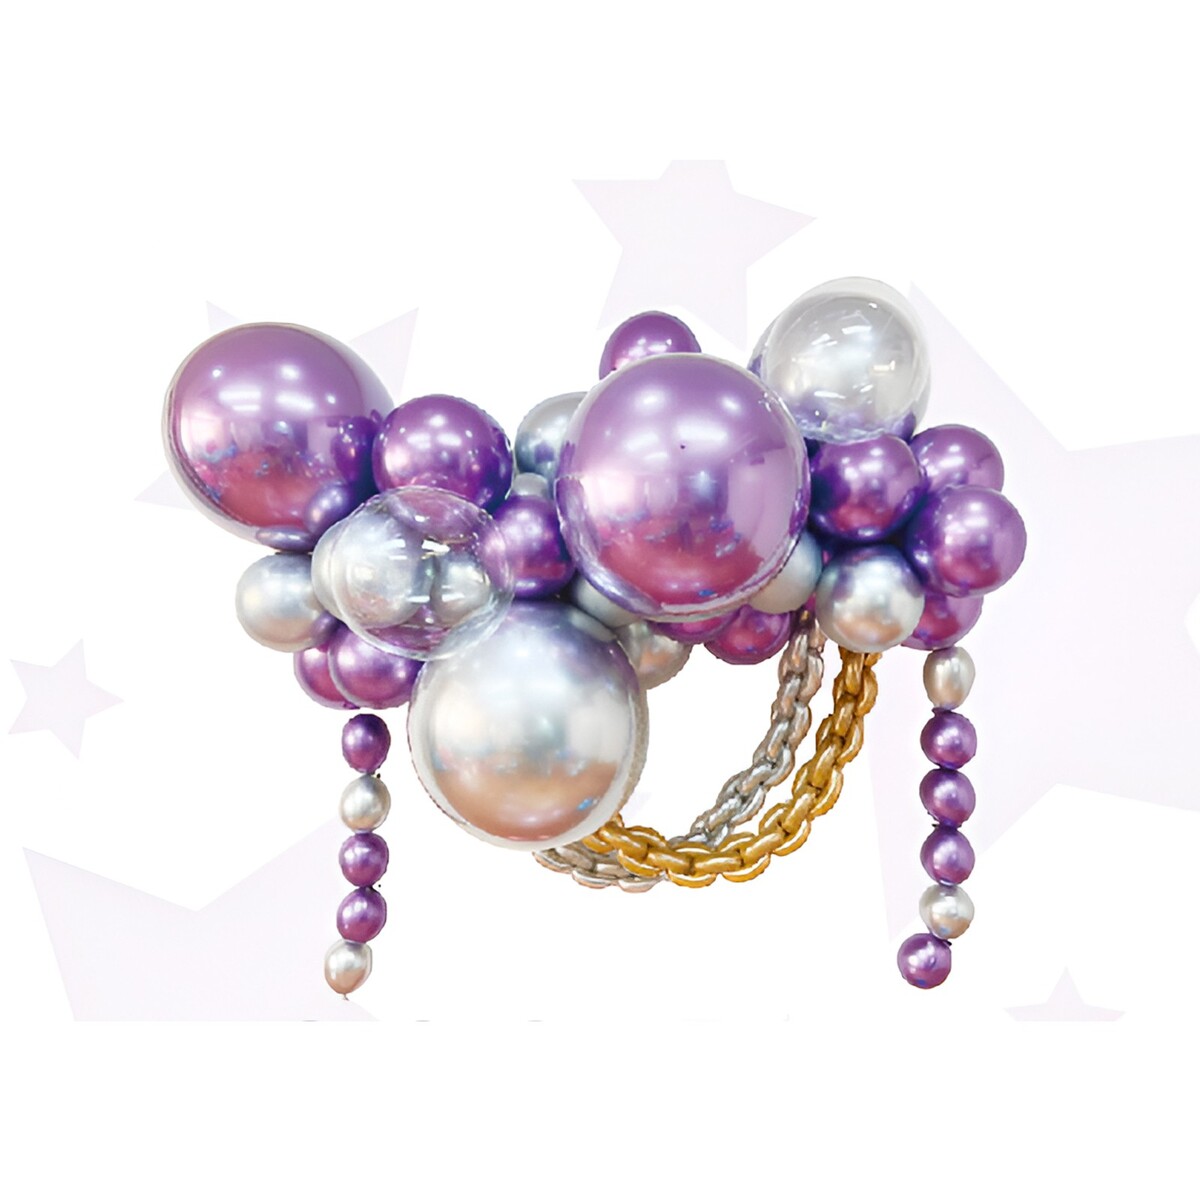 Набор для создания композиций из воздушных шаров, набор 52 шт., фиолетовый, серебро nebulous stars детский набор для создания украшений ободок резинка заколка для волос